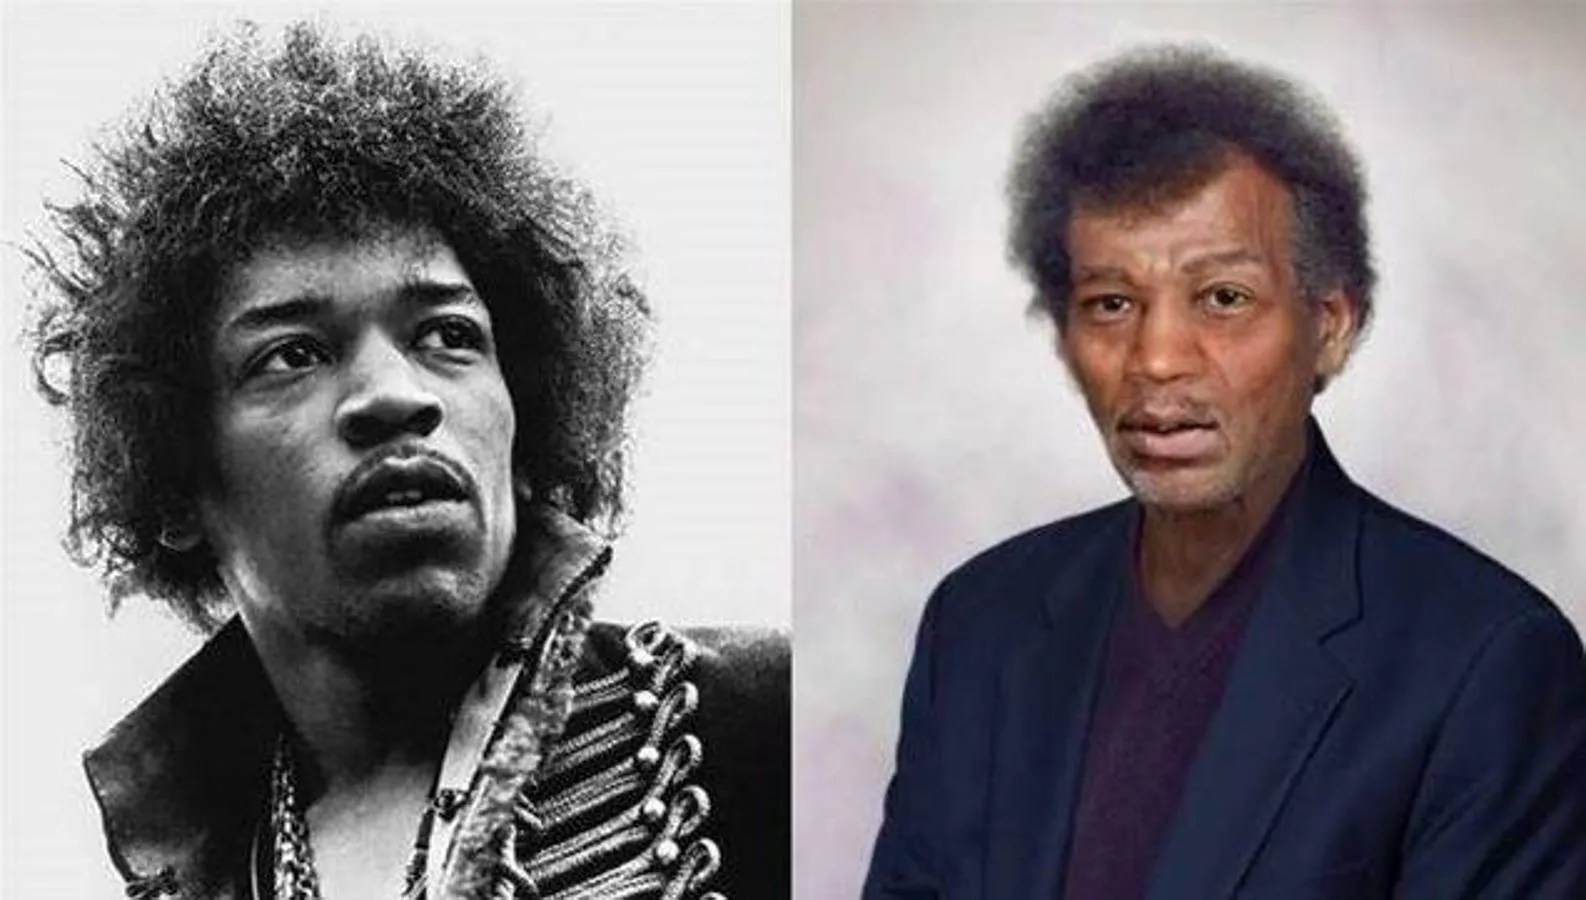 Jimi Hendrix. Guitarrista y cantante estadounidense. A pesar de que su carrera solo duró cuatro años, es considerado uno de los guitarristas más influyentes de la historia del rock. Falleció a los veintisiete años de edad, como consecuencia de una sobredosis de barbitúricos.